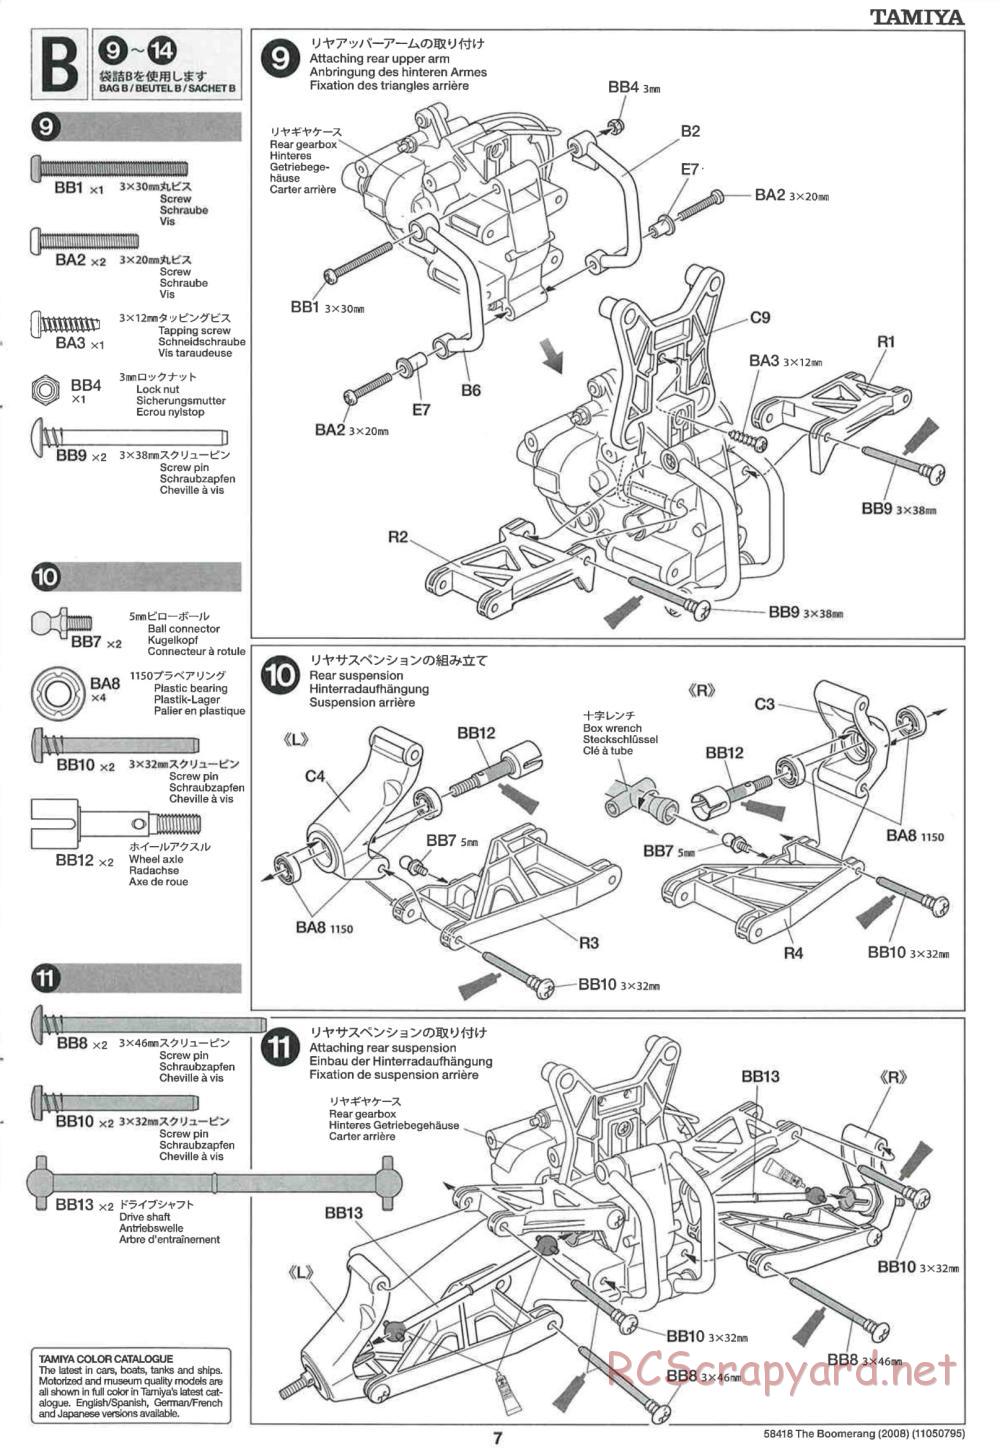 Tamiya - The Boomerang 2008 Chassis - Manual - Page 7